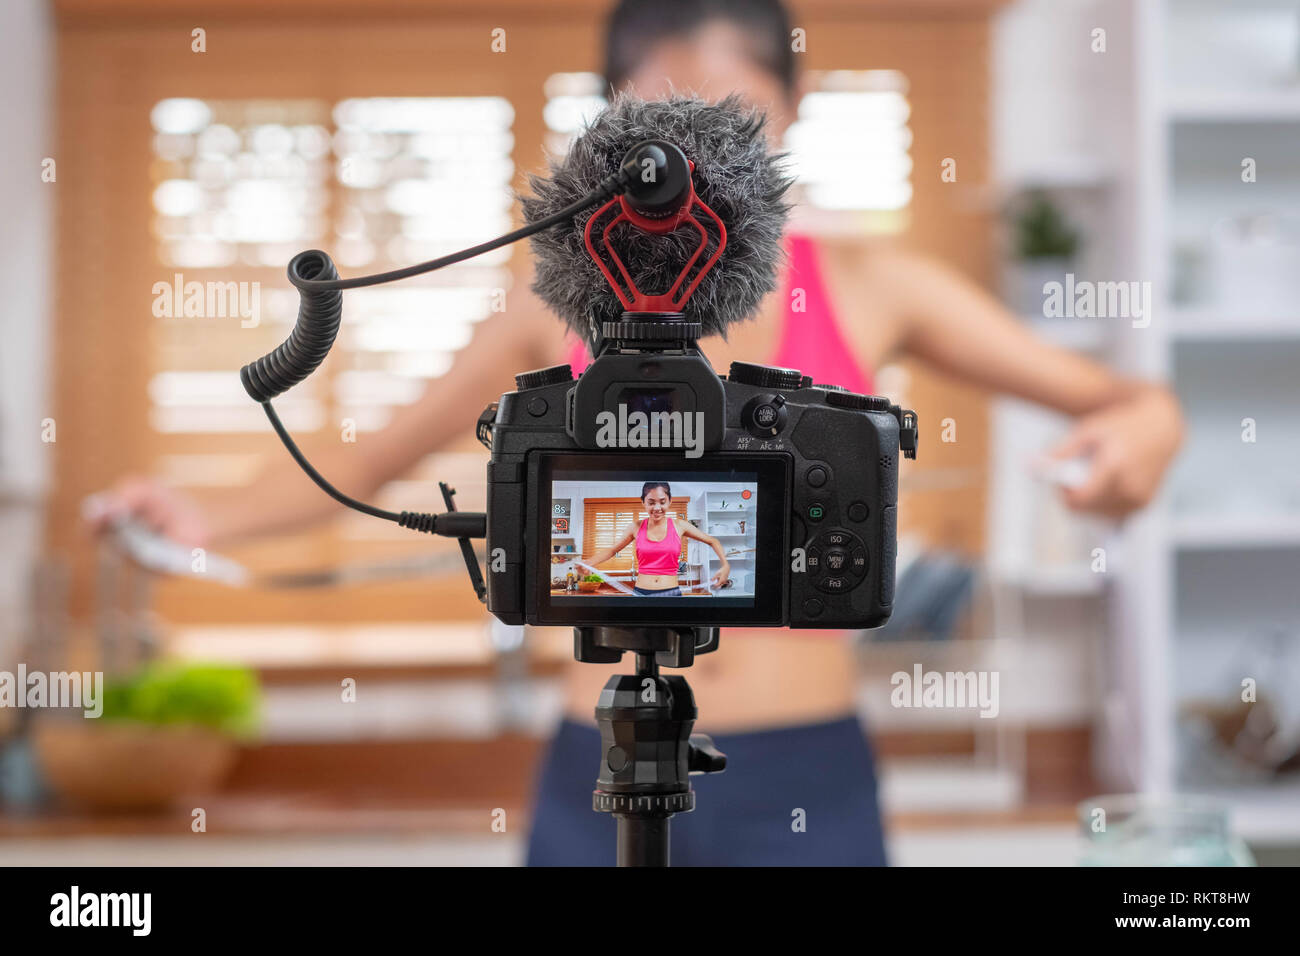 Oben an der Kamera schließen während asiatische Frau blogger Aufnahme ein Video Tutorial wie Gewicht zu verlieren und erhalten gesund. Einflussnehmer lifestyle Konzept Stockfoto